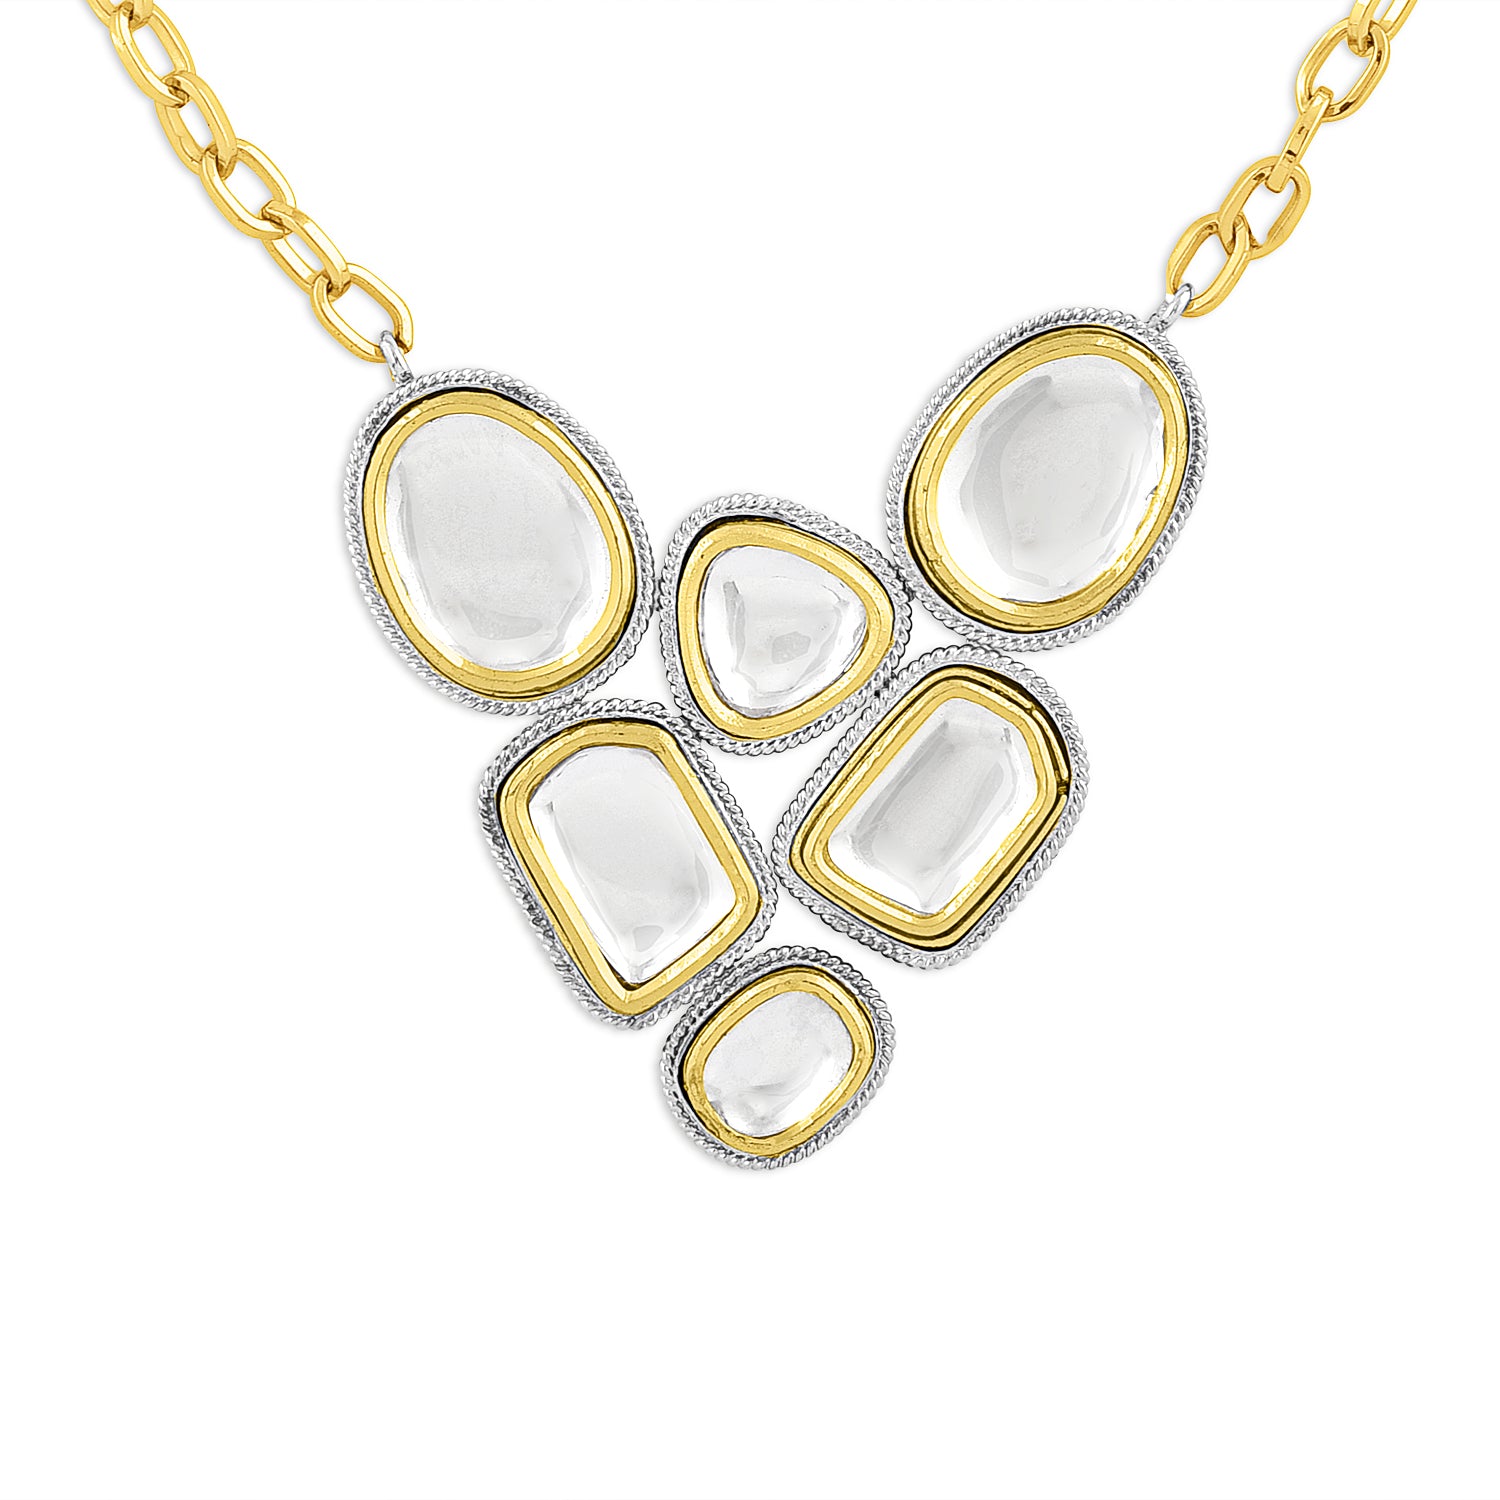 Gold & Silver Polki Heart Necklace